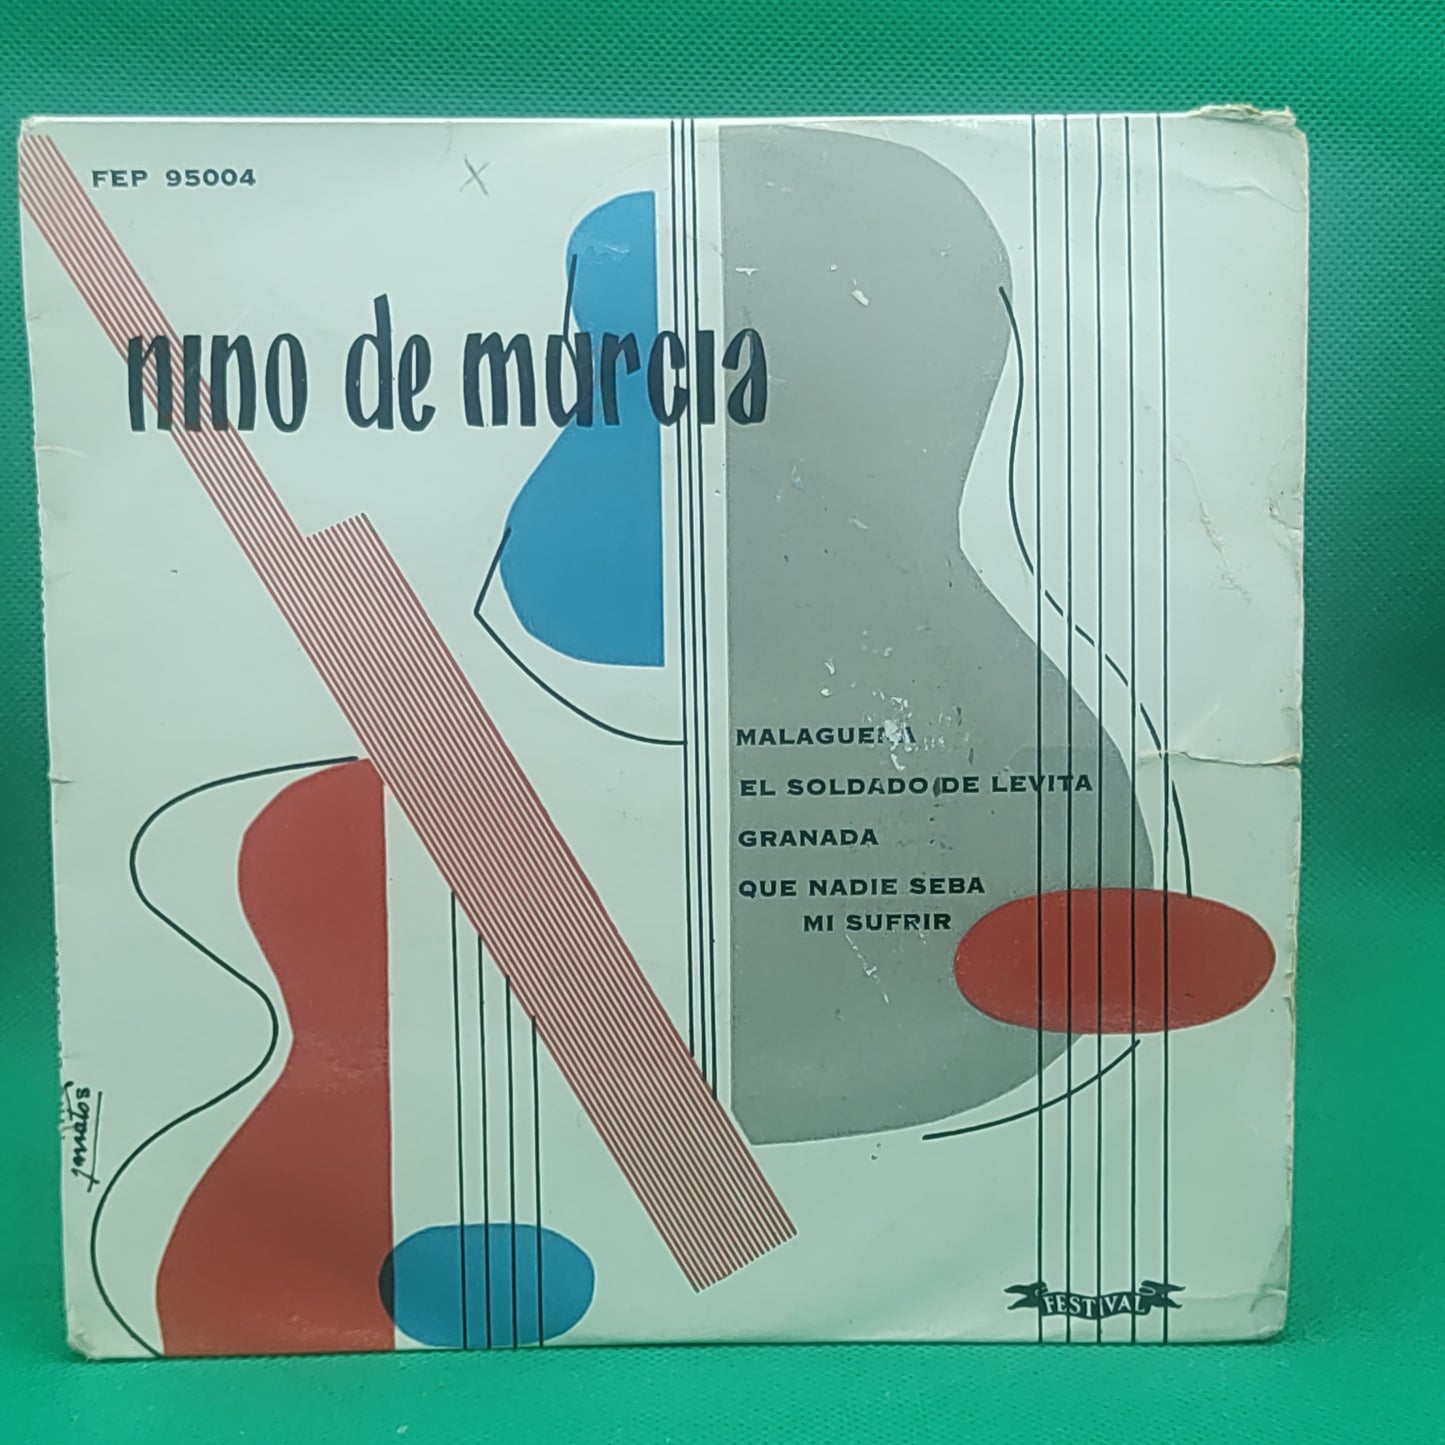 Nino Murcia